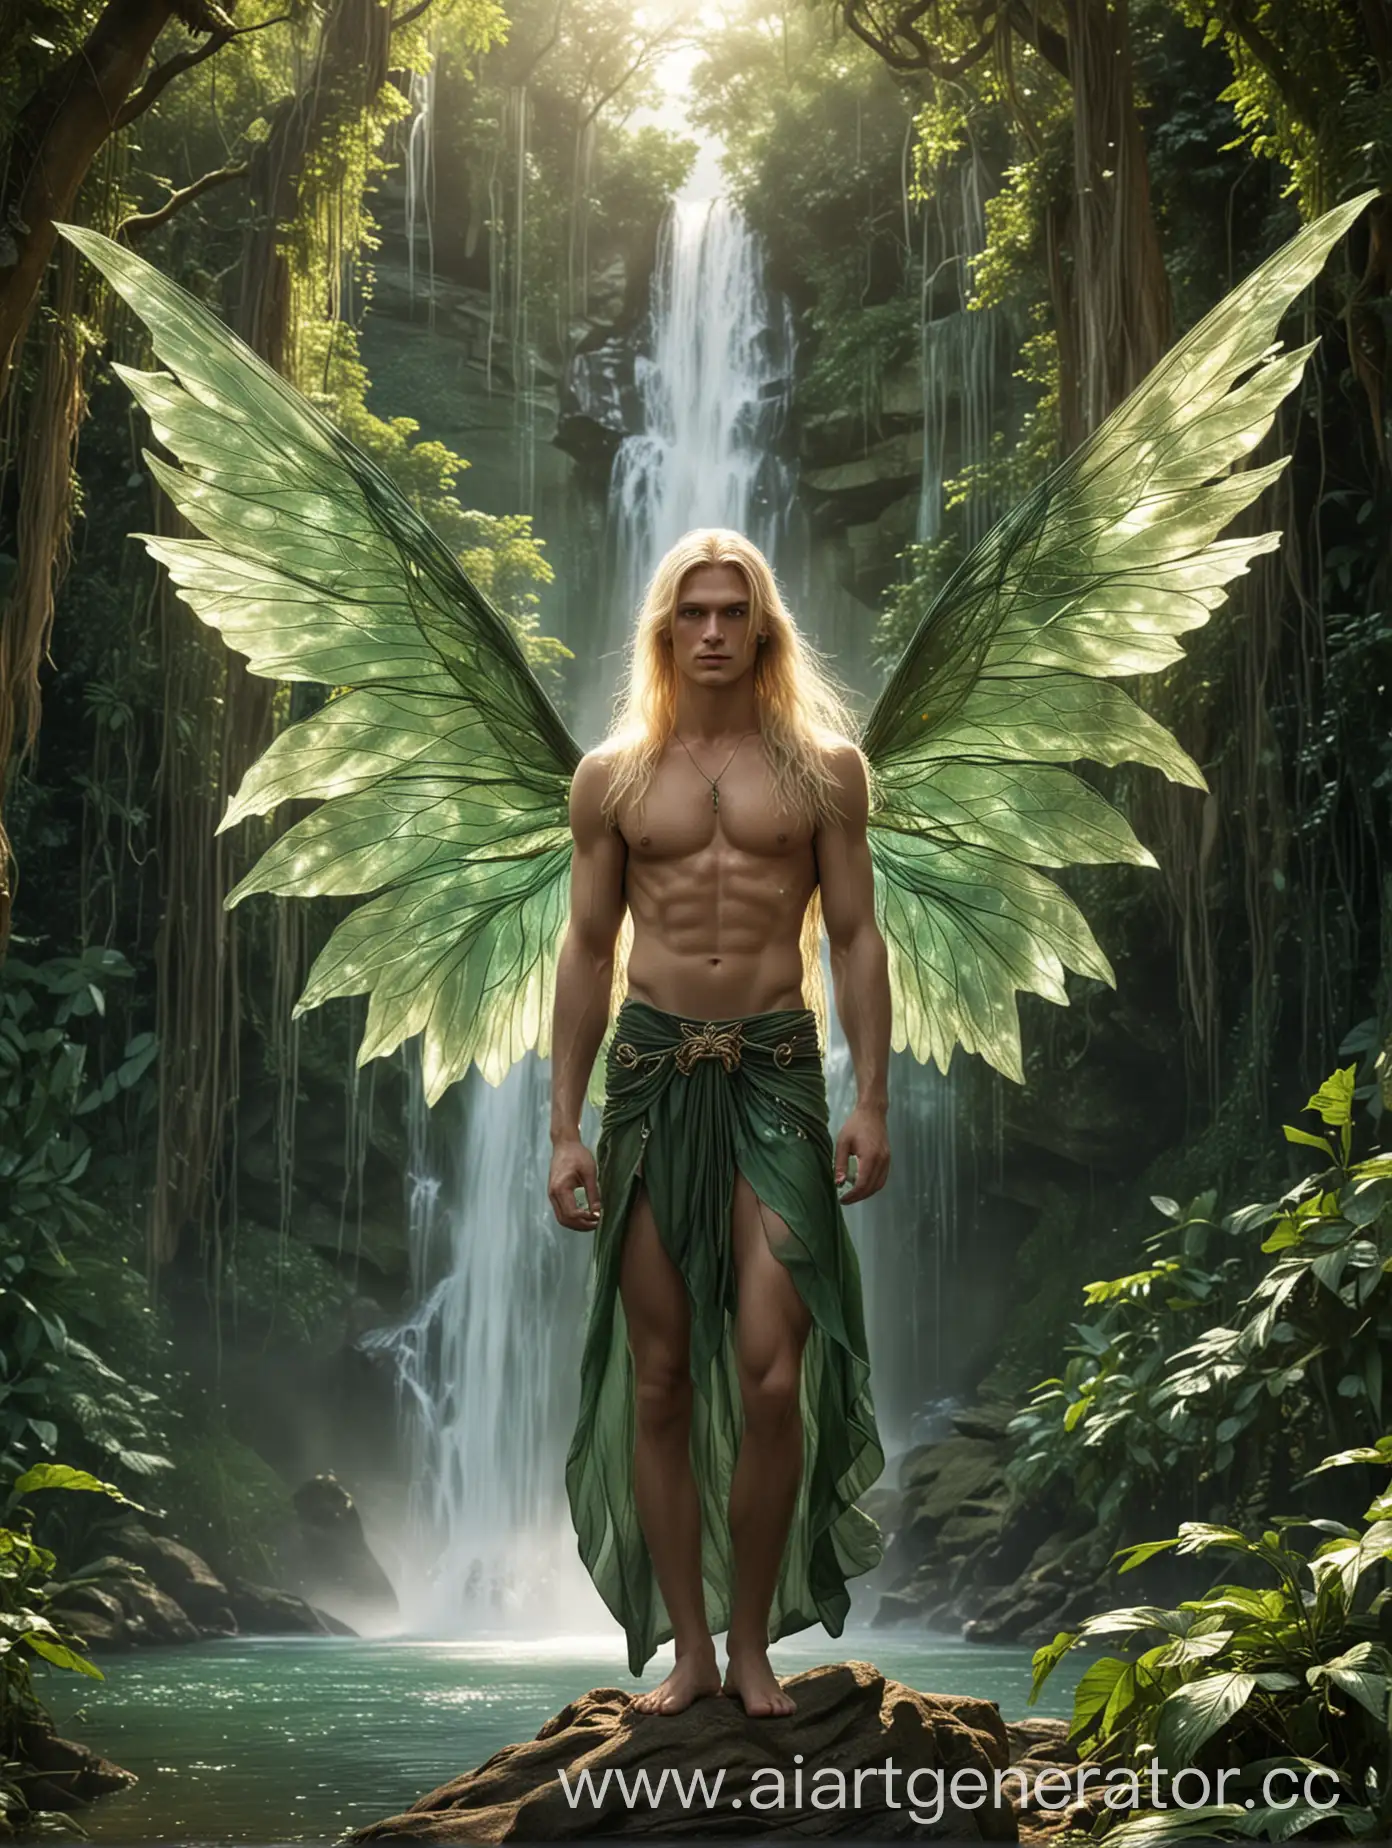 Мужчина, высокий, блондин, длинные волосы, изумрудные глаза, сексуальный, крылья феи большие , джунгли, большие деревья, водопад